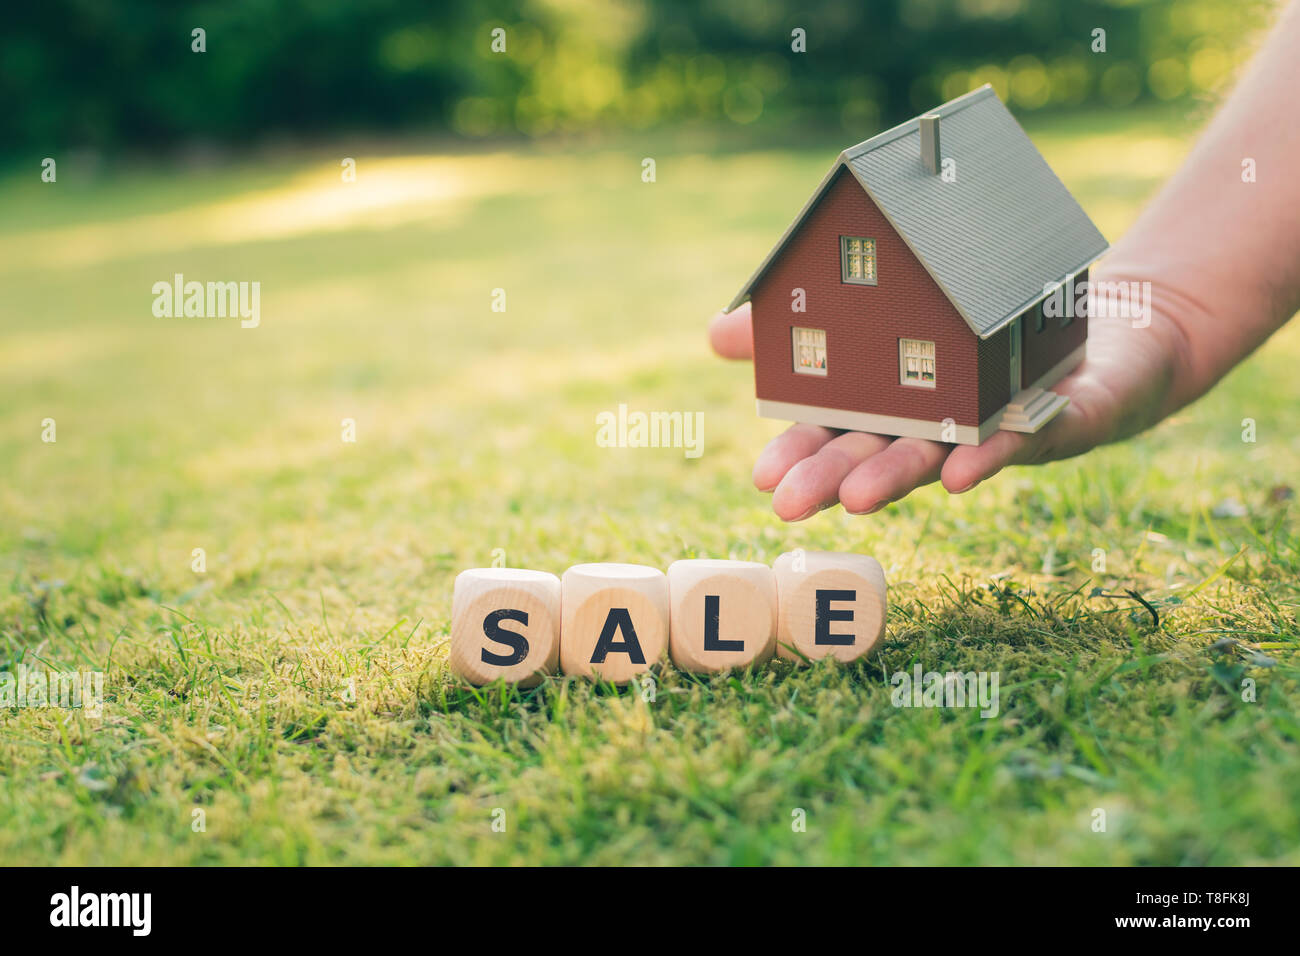 Concepto de una casa en venta. Una mano sostiene un modelo casa por encima de una pradera. Dados forman la palabra 'venta'. Foto de stock